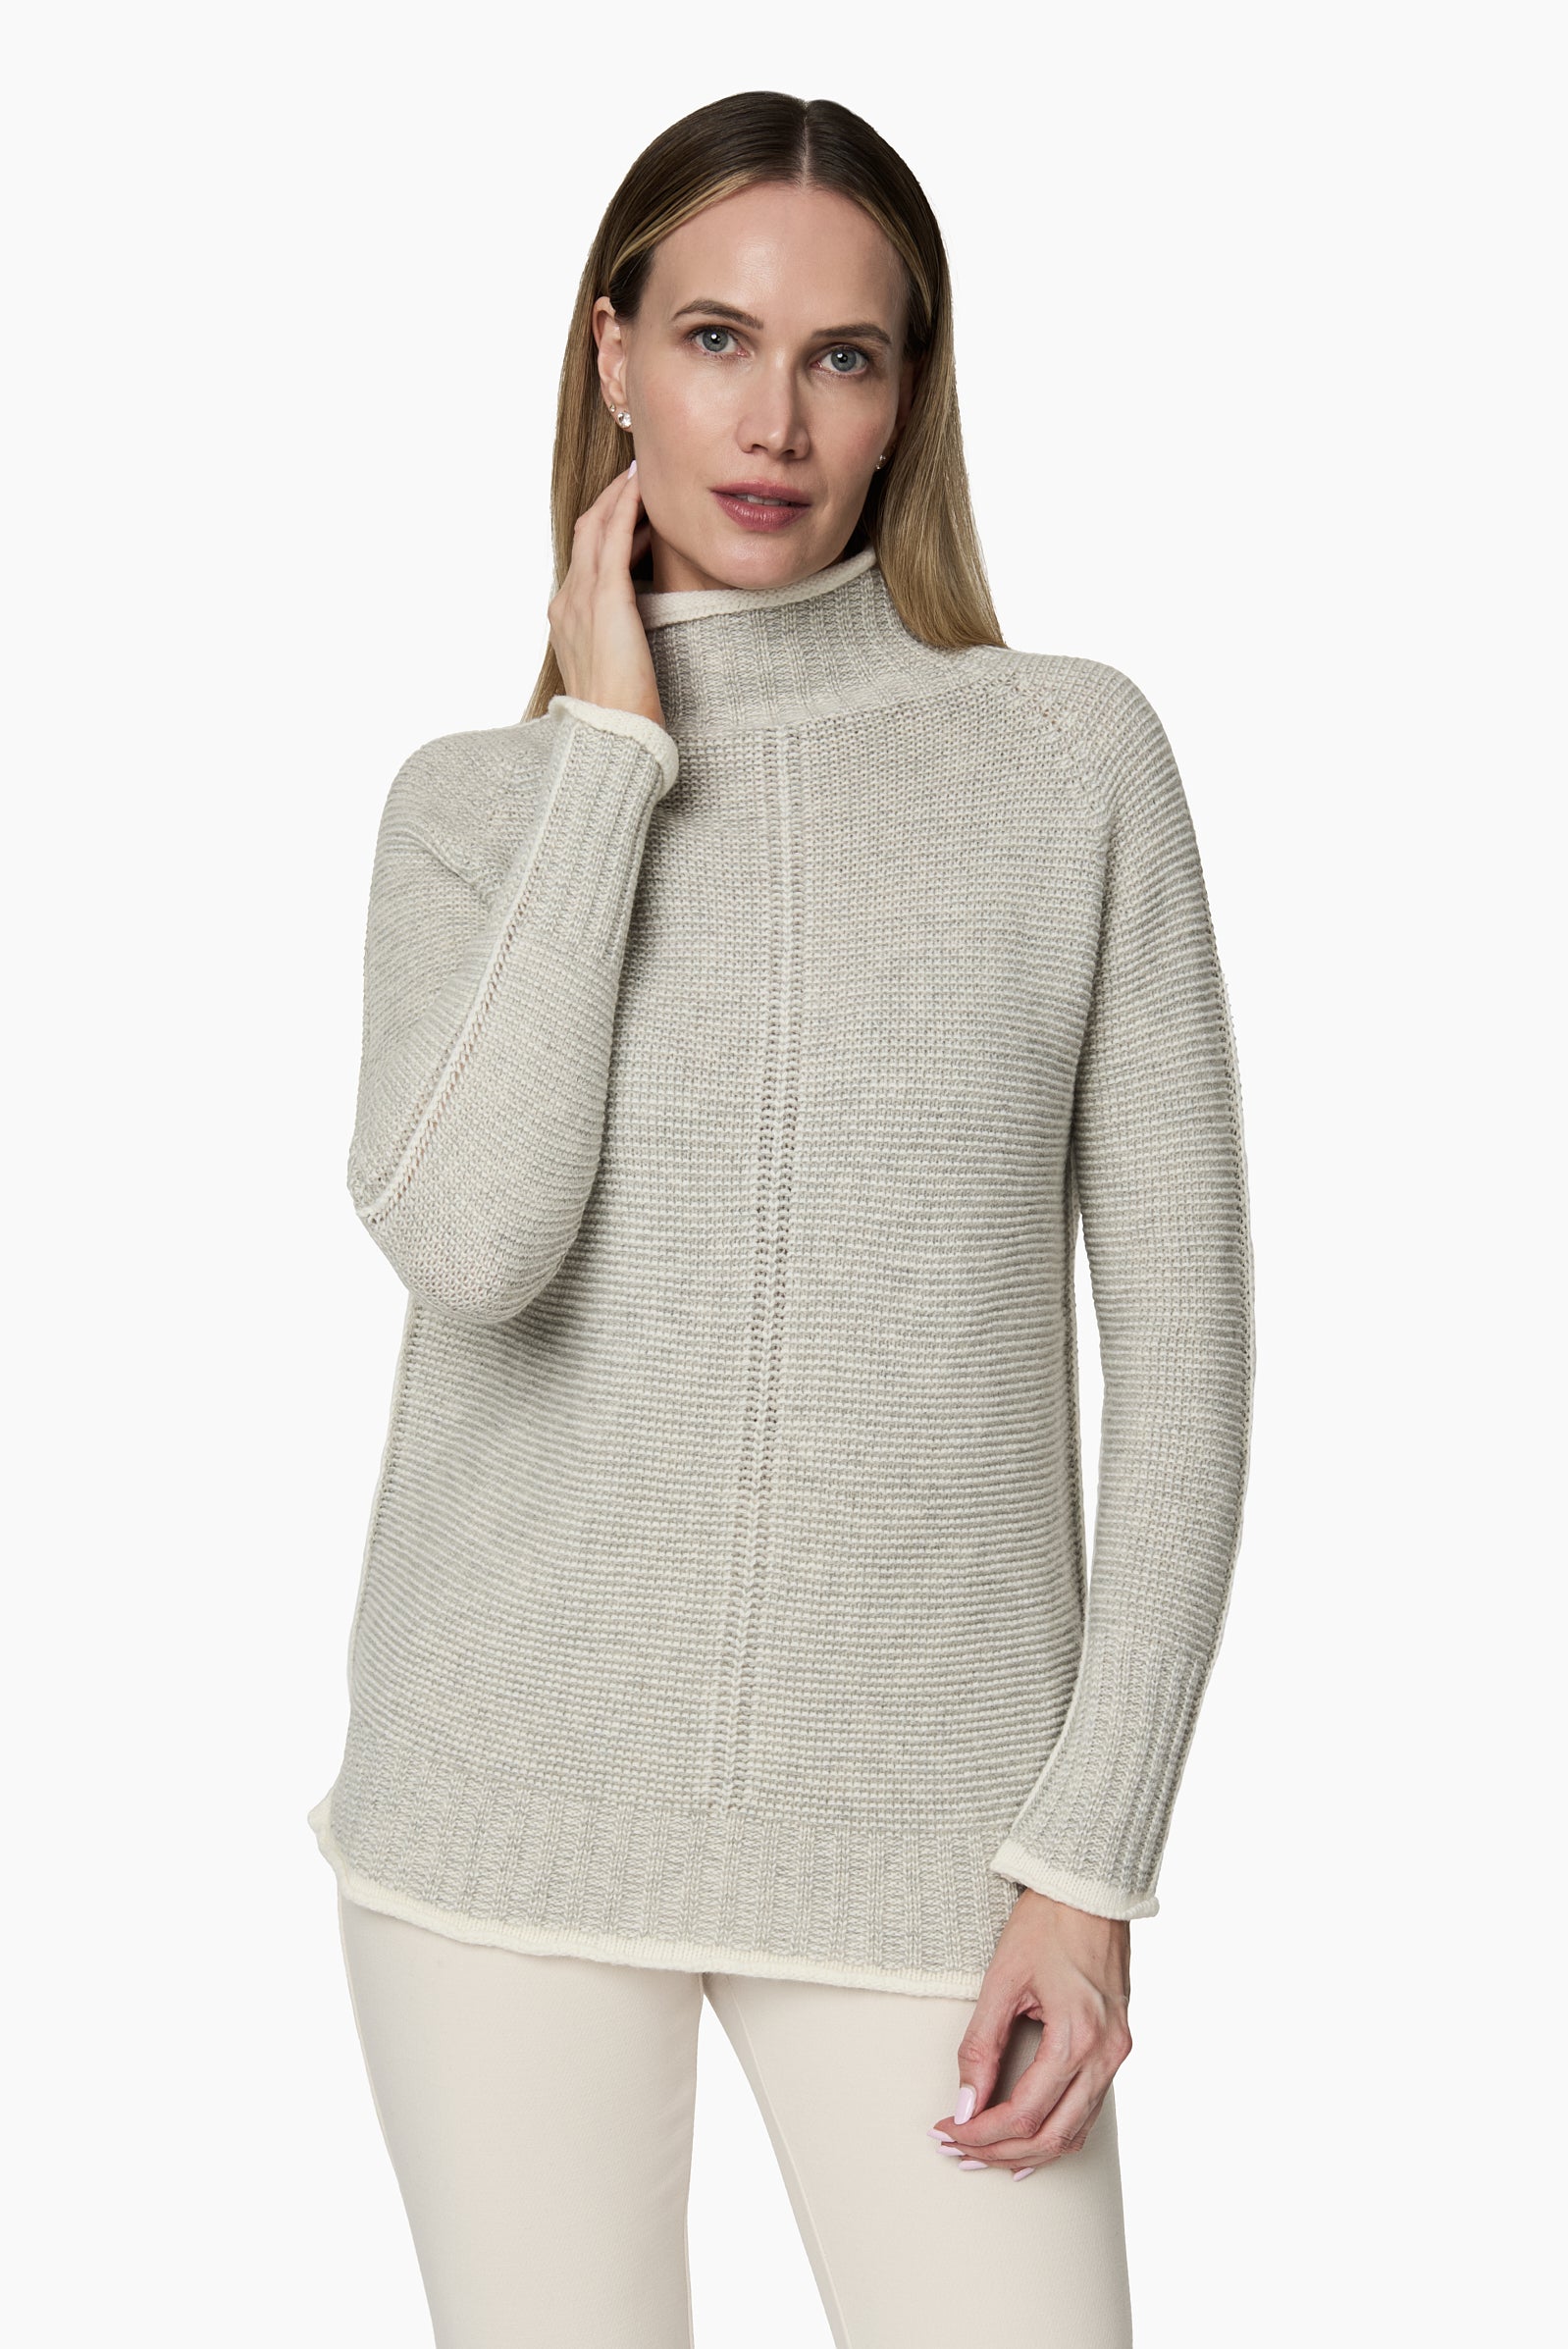 Sweater Cuello Subido Bordes Blanco